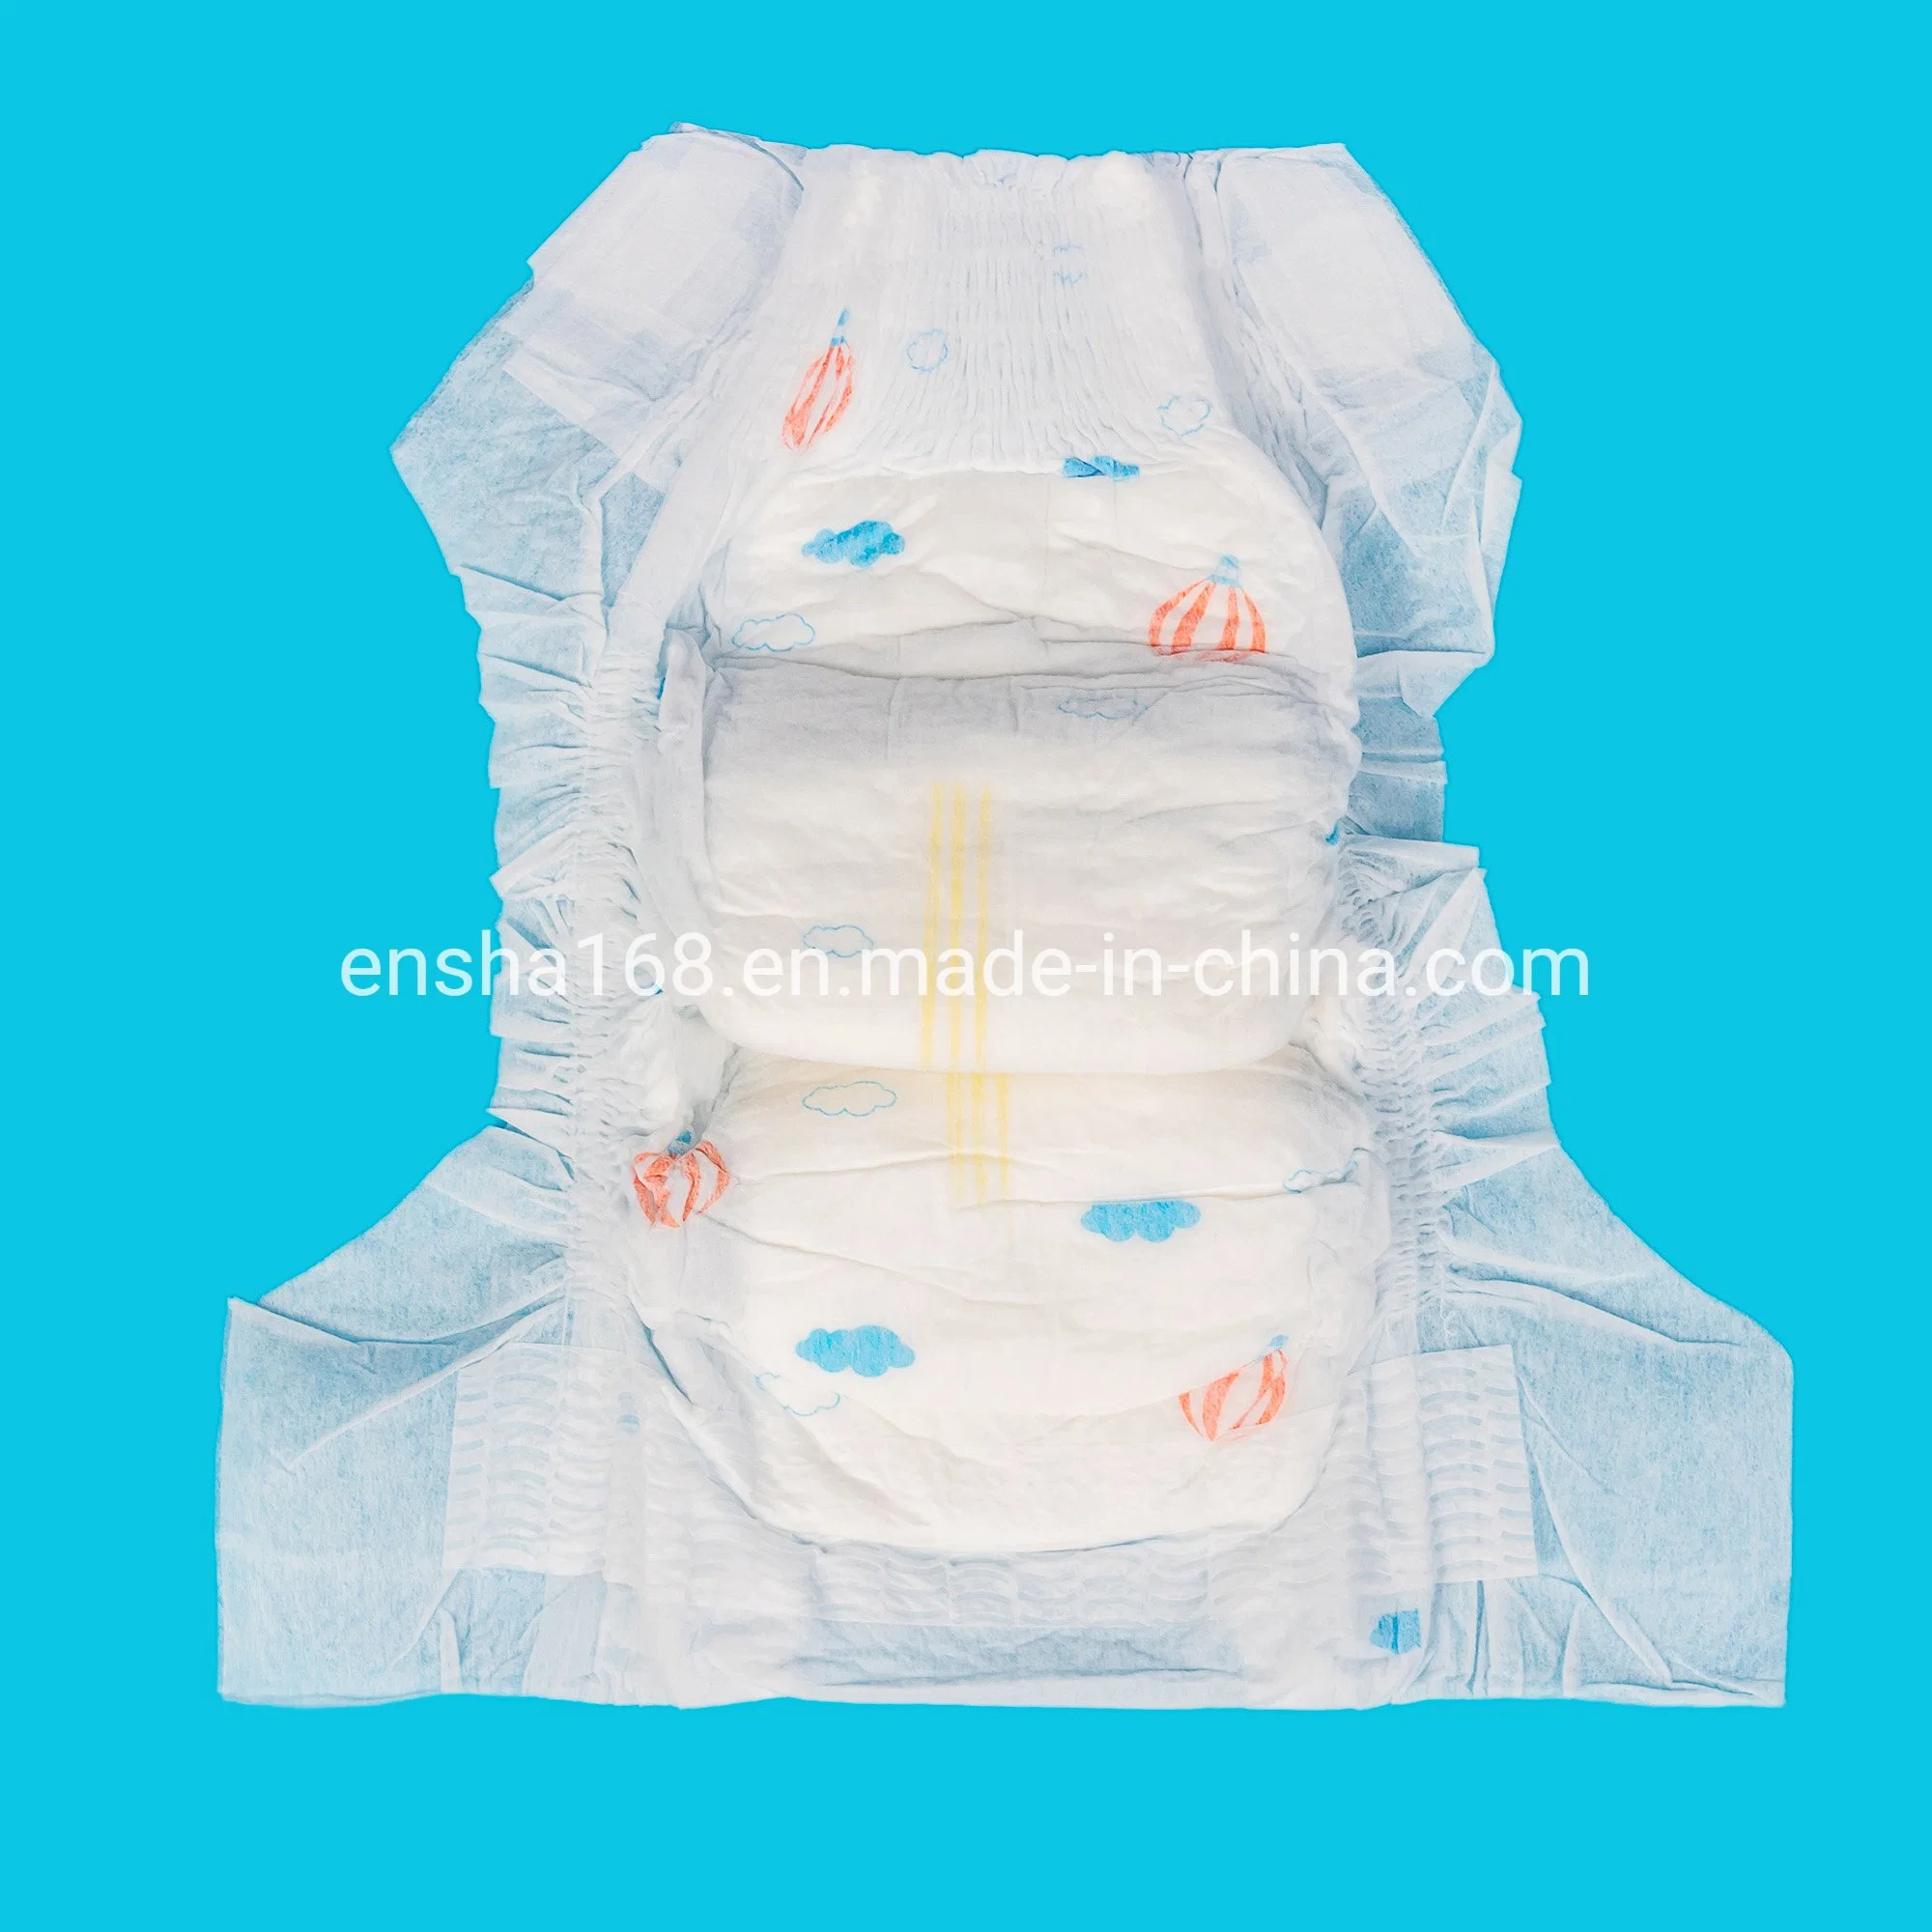 Os Cuidados do bebé descartáveis produtos de Cuidados Pessoais fraldas para bebé